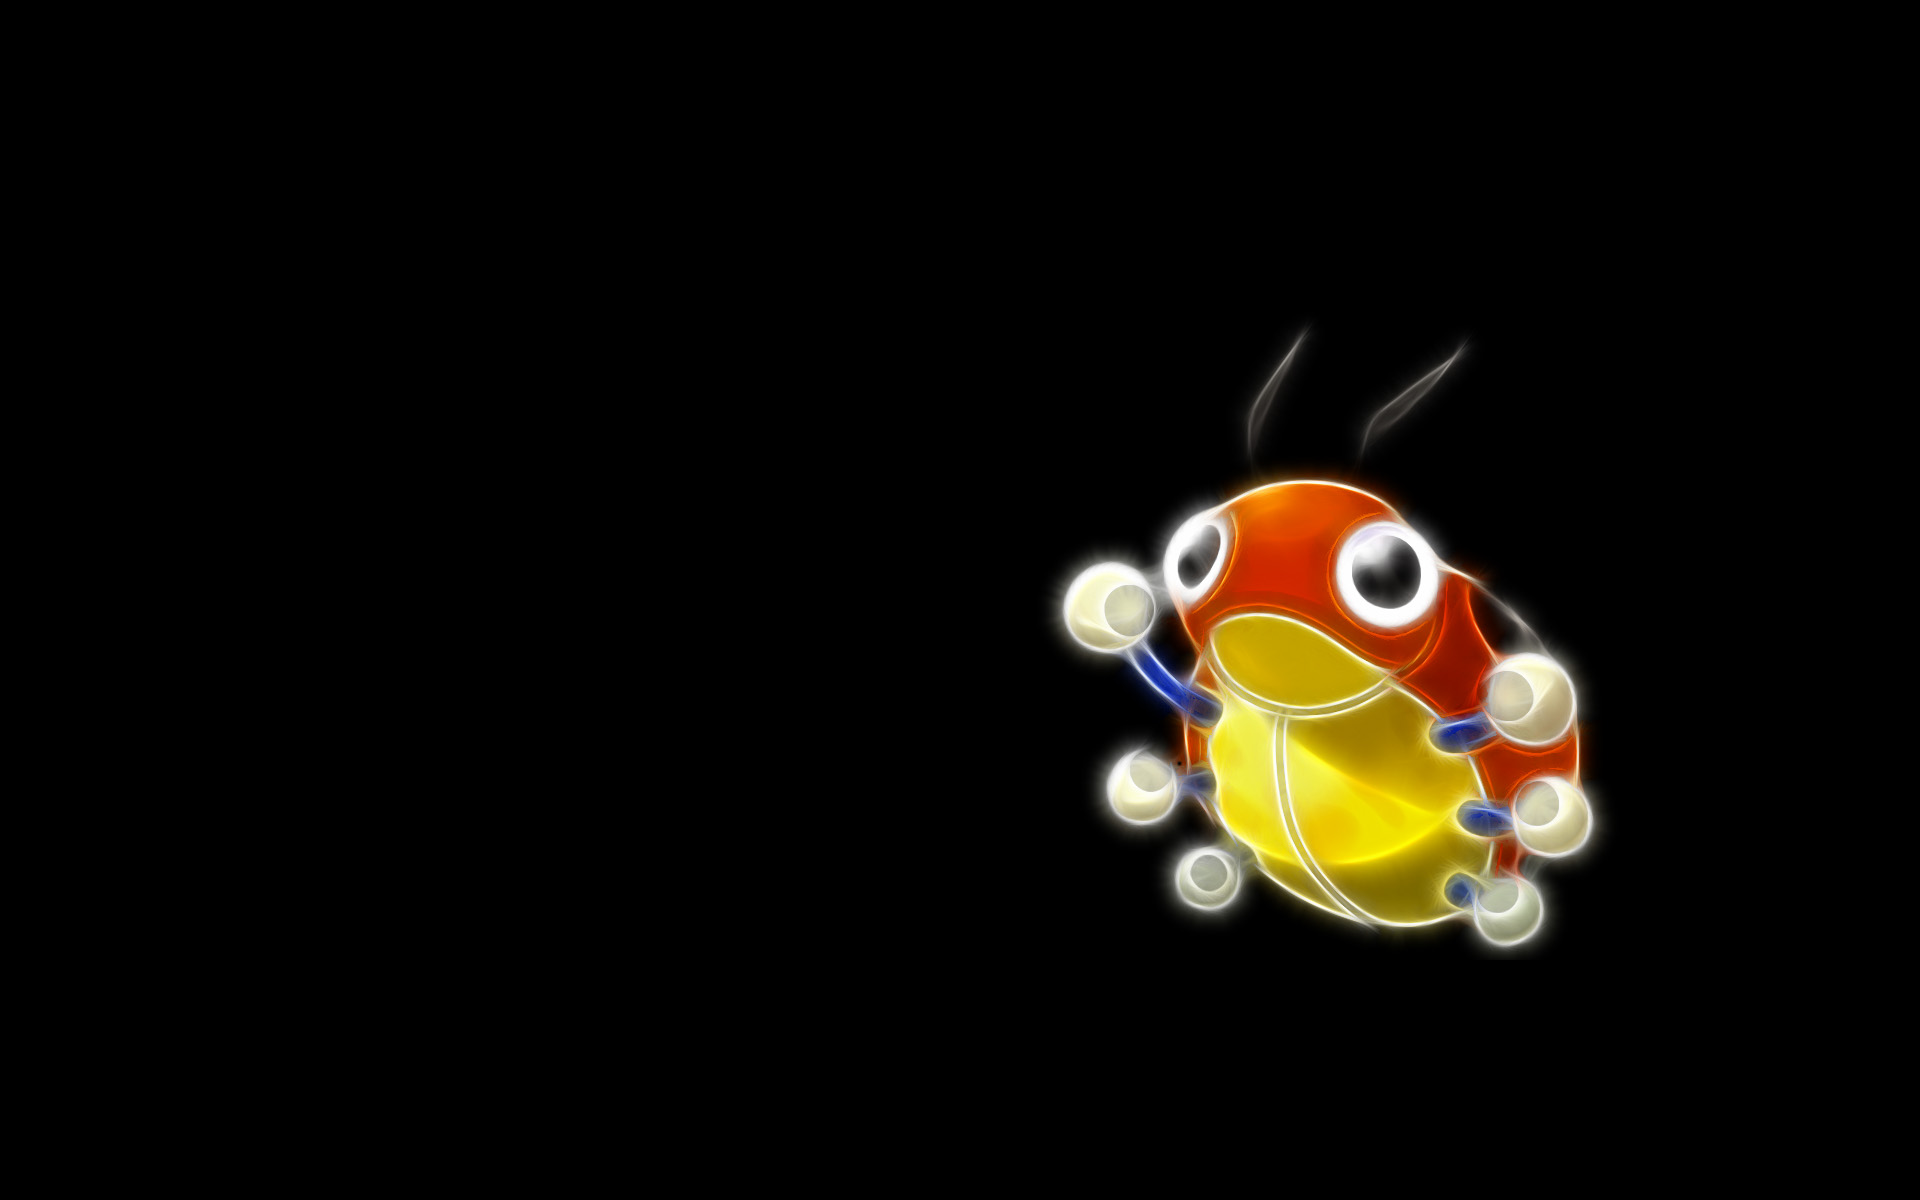 Descarga gratuita de fondo de pantalla para móvil de Pokémon Insecto, Ledyba (Pokémon), Pokémon, Animado.